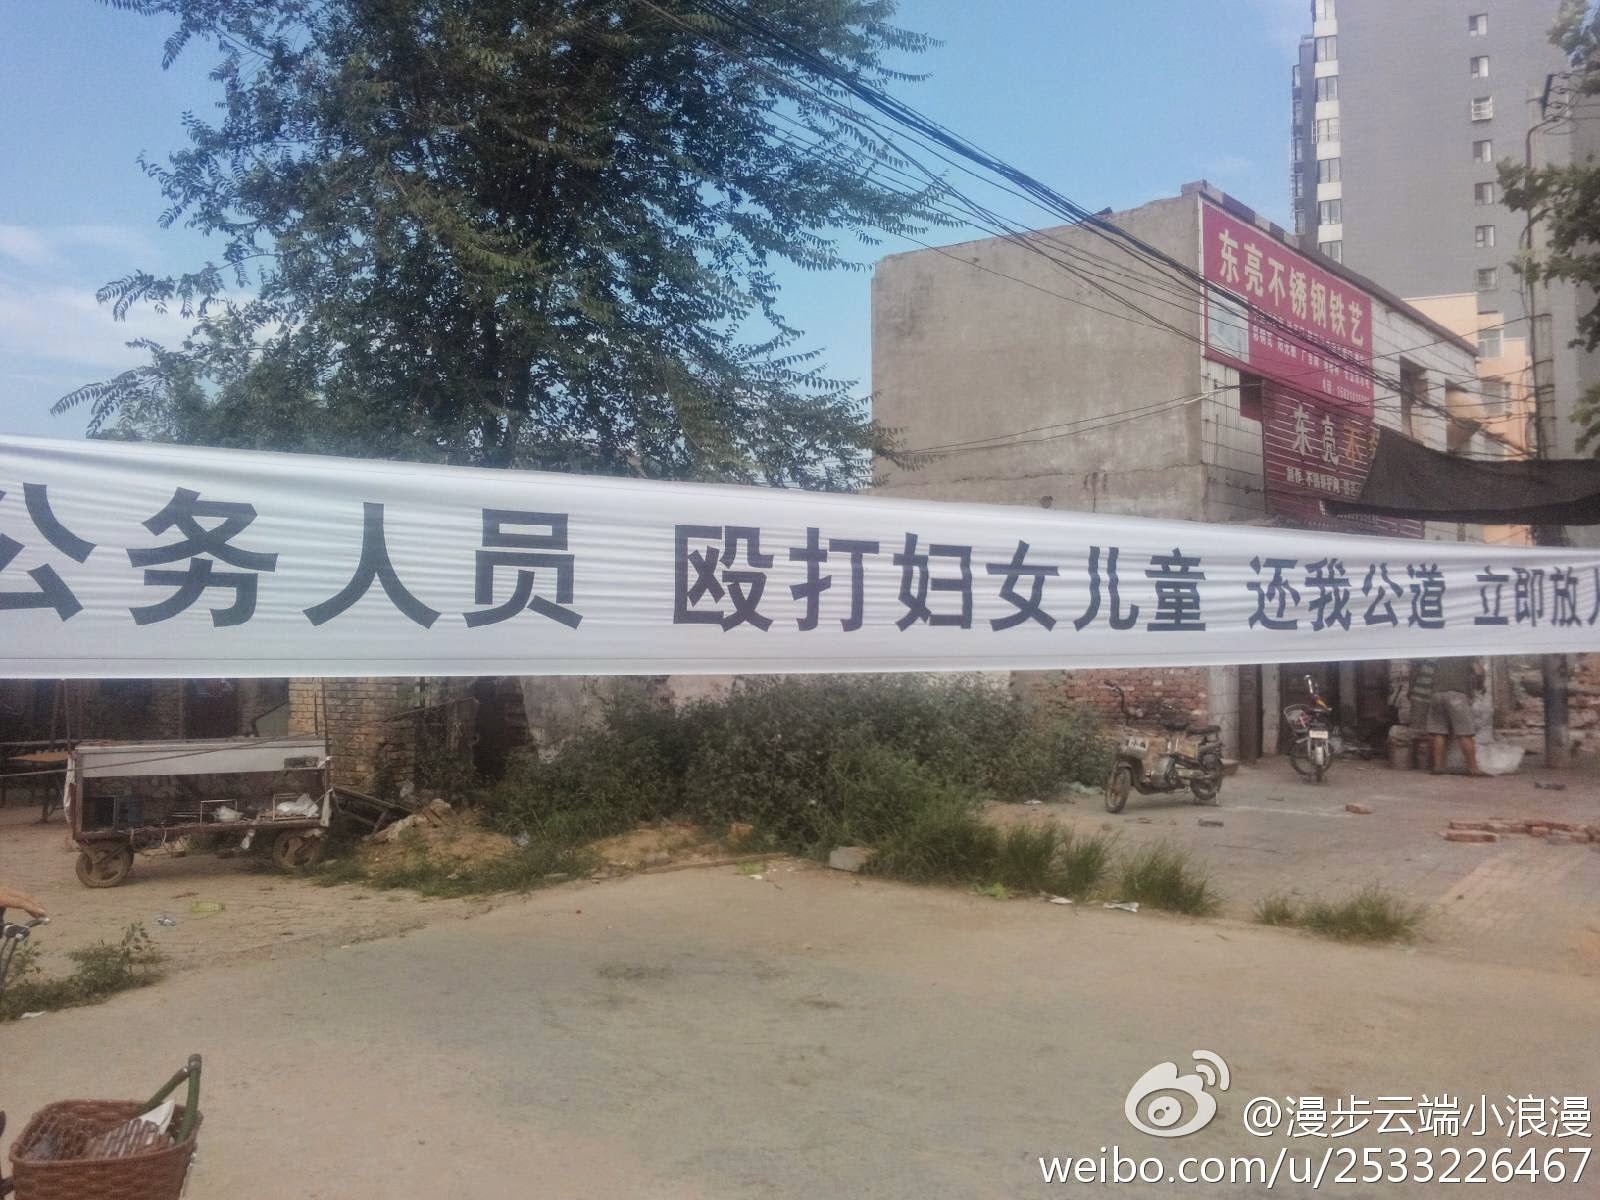 青海警察强拆鸣枪示威殴打村民 / 河北邯郸三百警强拆打伤多人 (19图)  